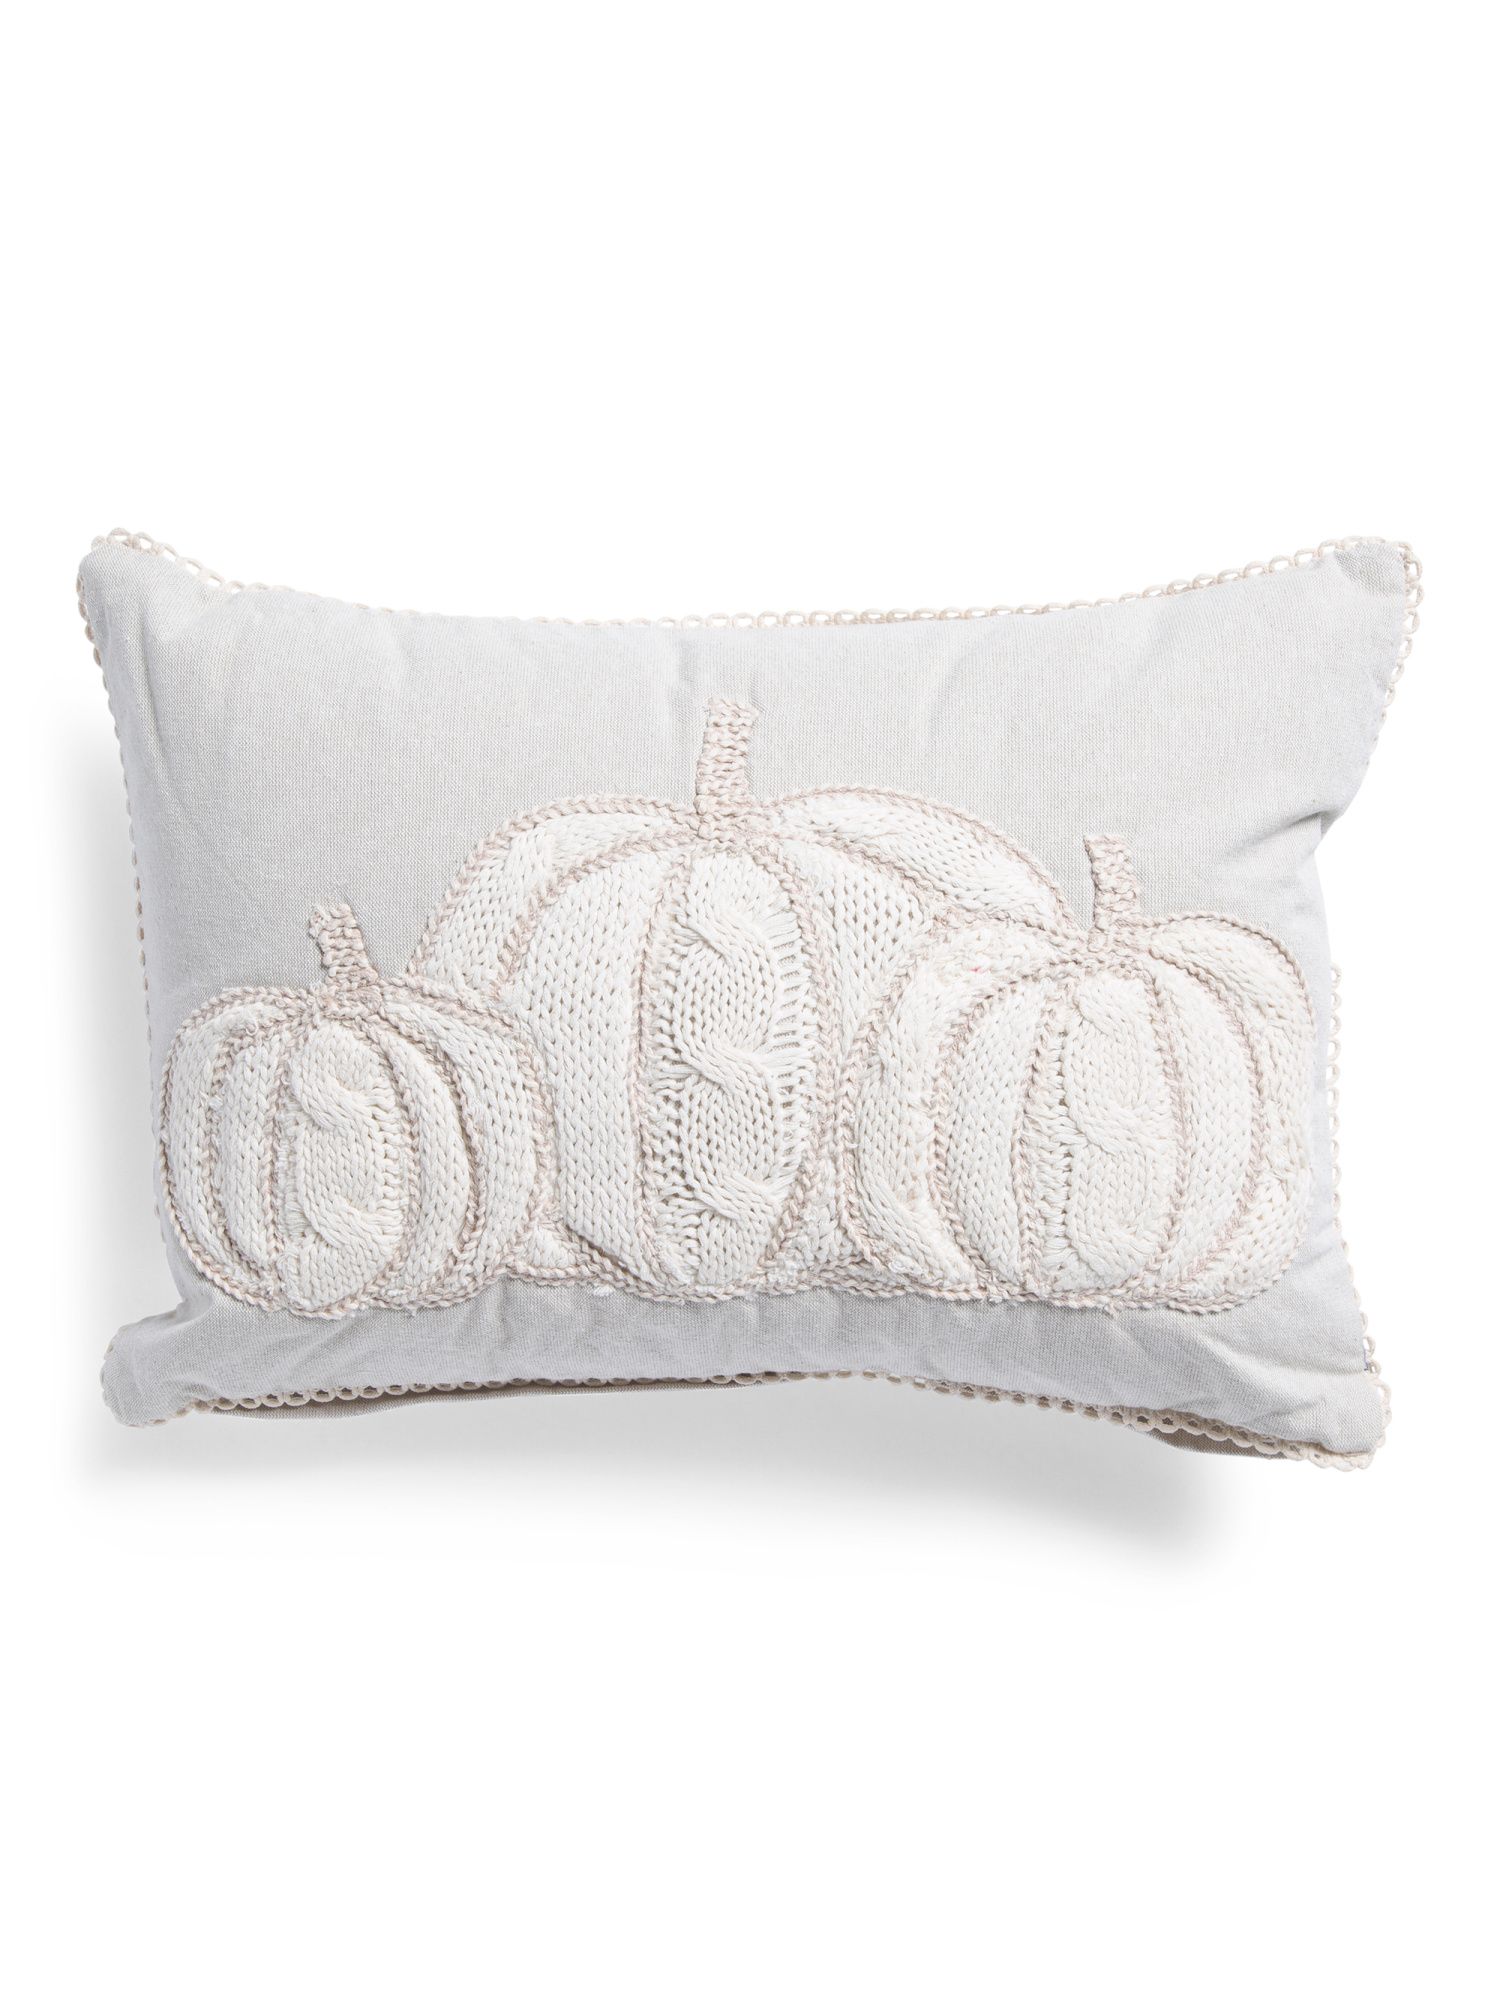 14x20 3 Knit Pumpkins Pillow | TJ Maxx